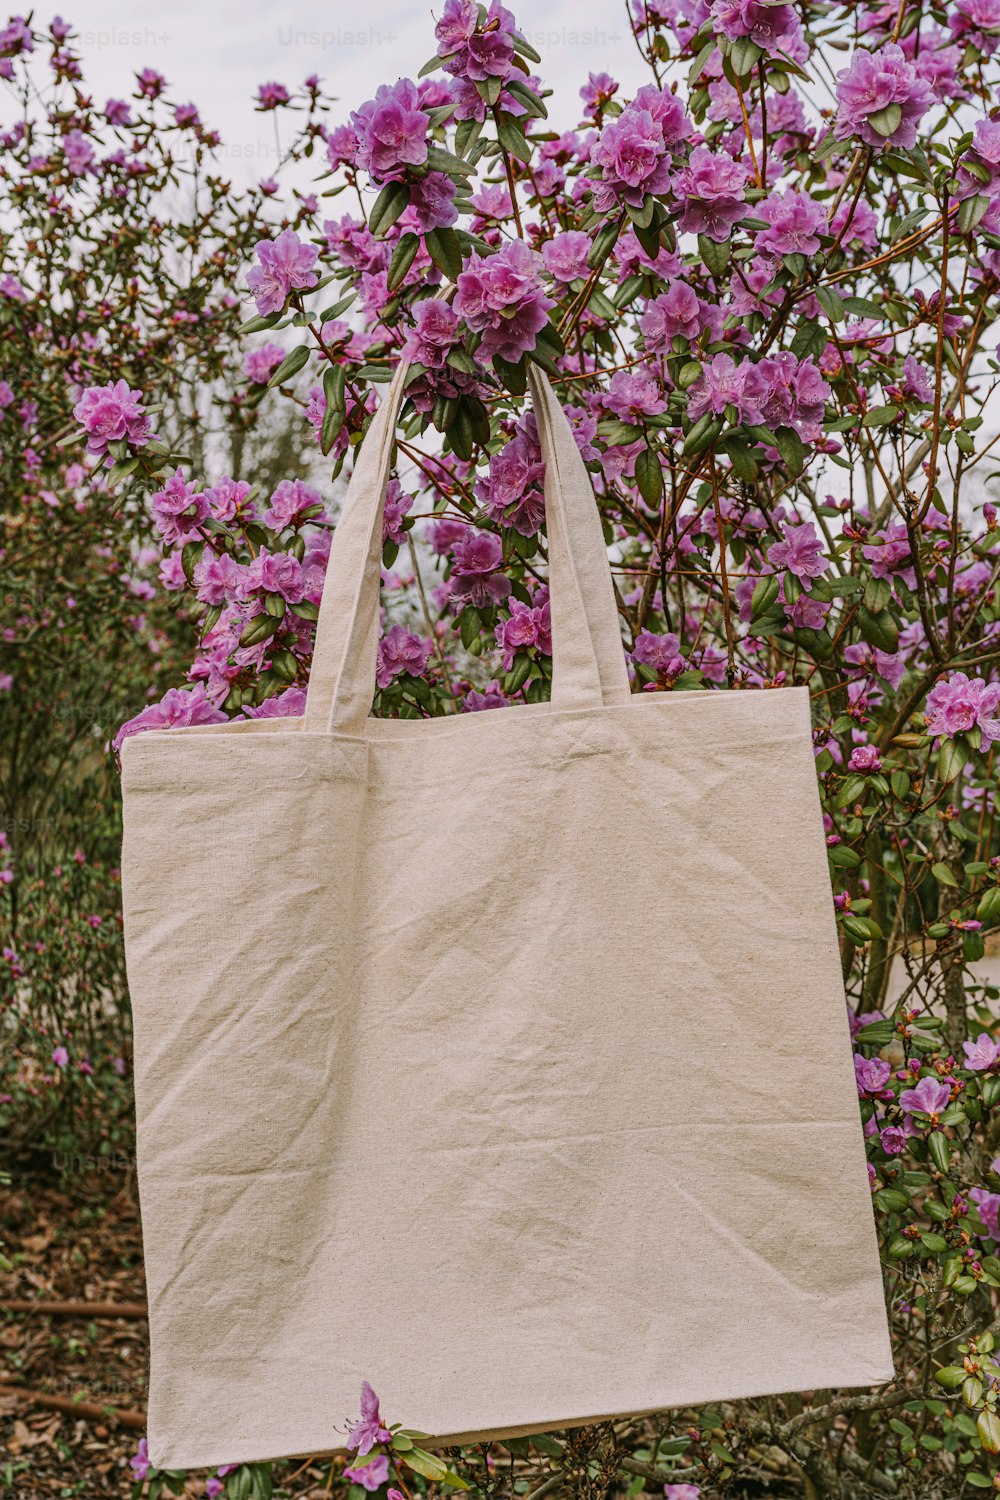 Un sac blanc suspendu à un arbre rempli de fleurs violettes